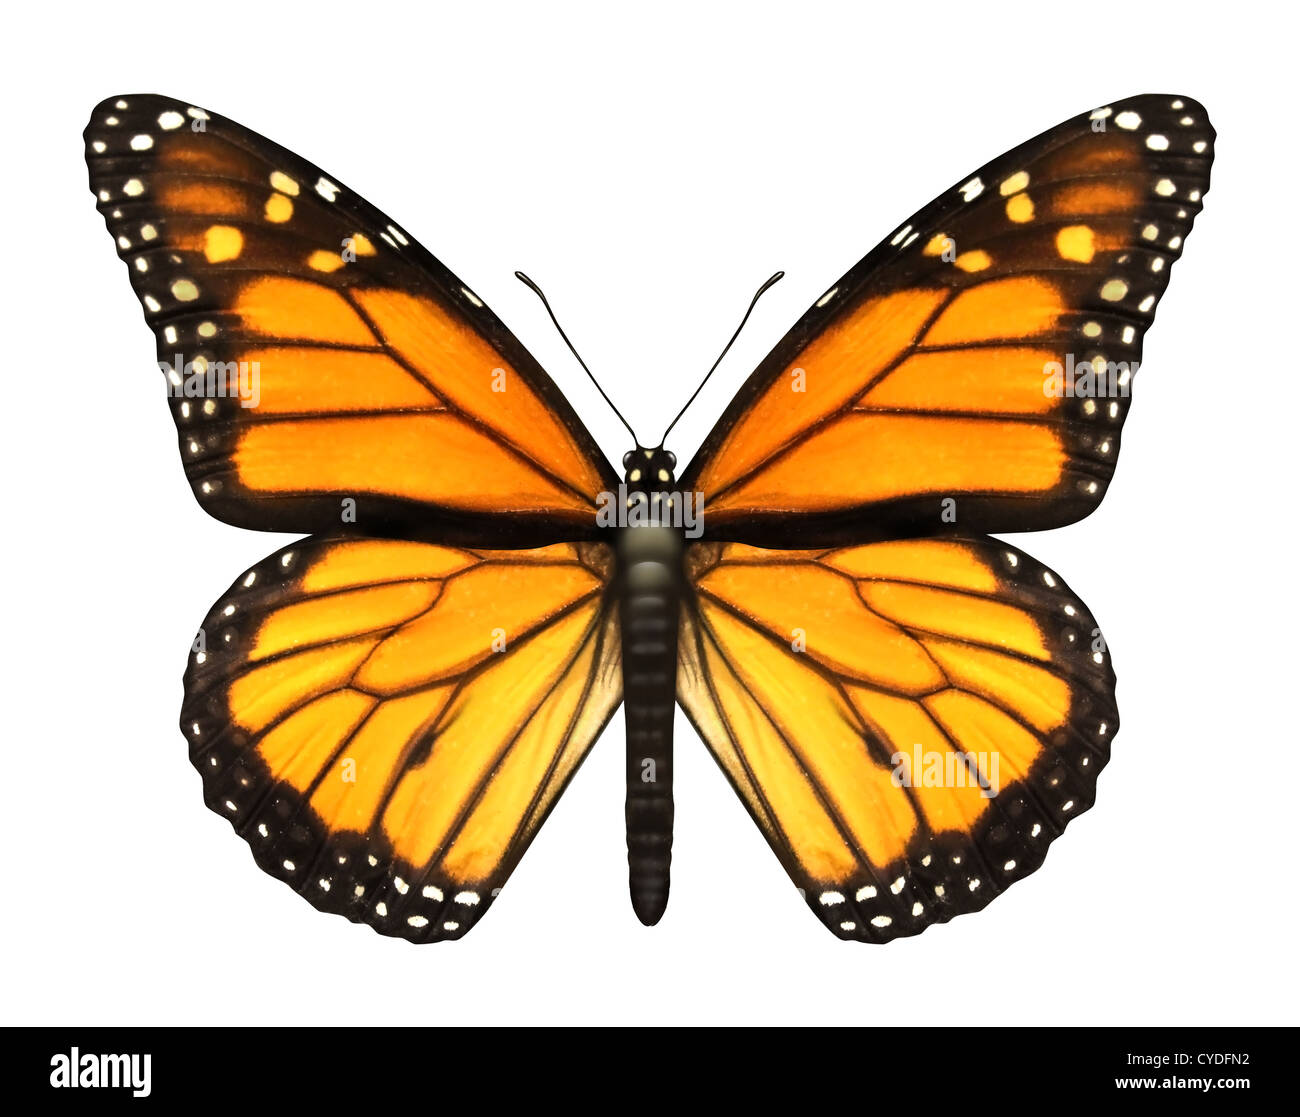 Monarch-Schmetterling mit offenen Flügeln in der Draufsicht als eine fliegende wandernde Insekten Schmetterlinge, die Sommer und die Schönheit der Natur darstellt. Stockfoto